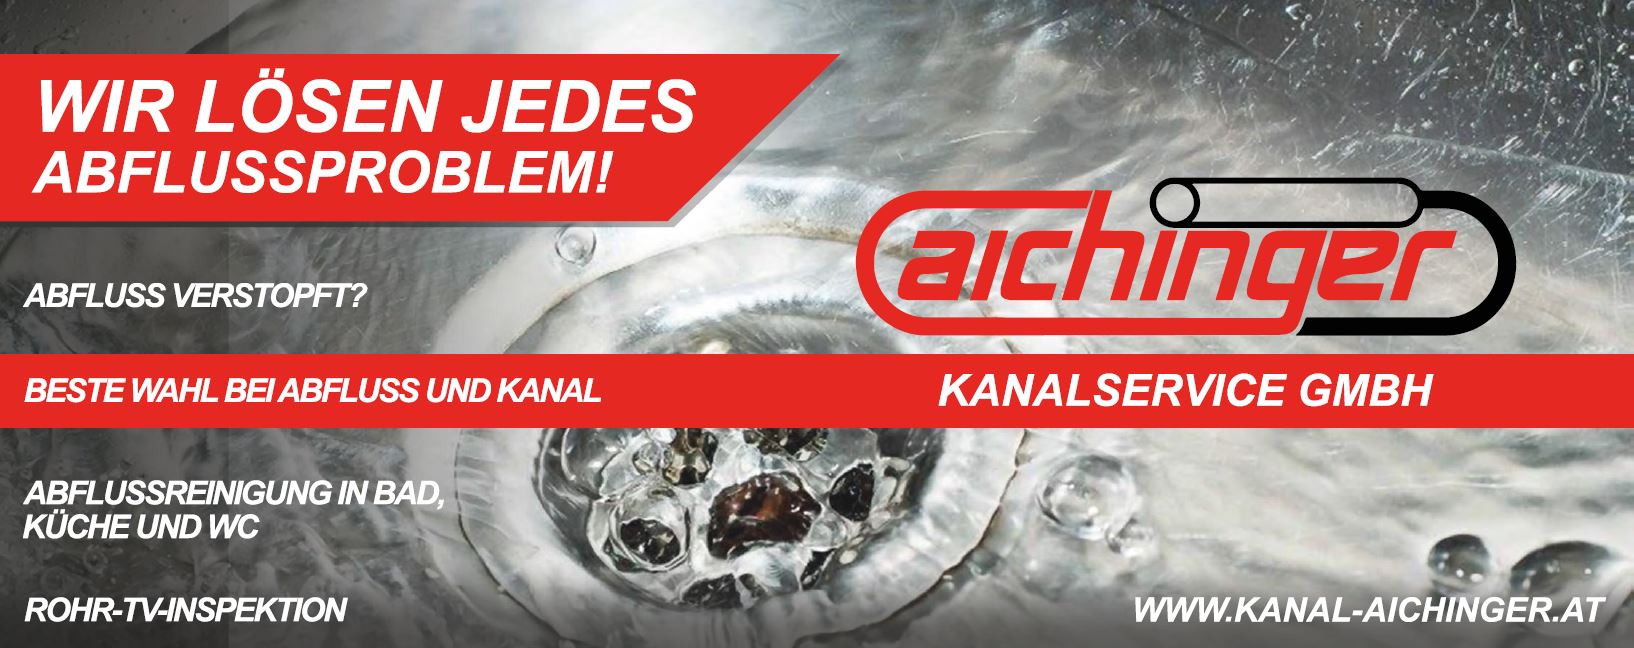 Aichinger Kanalservice GmbH